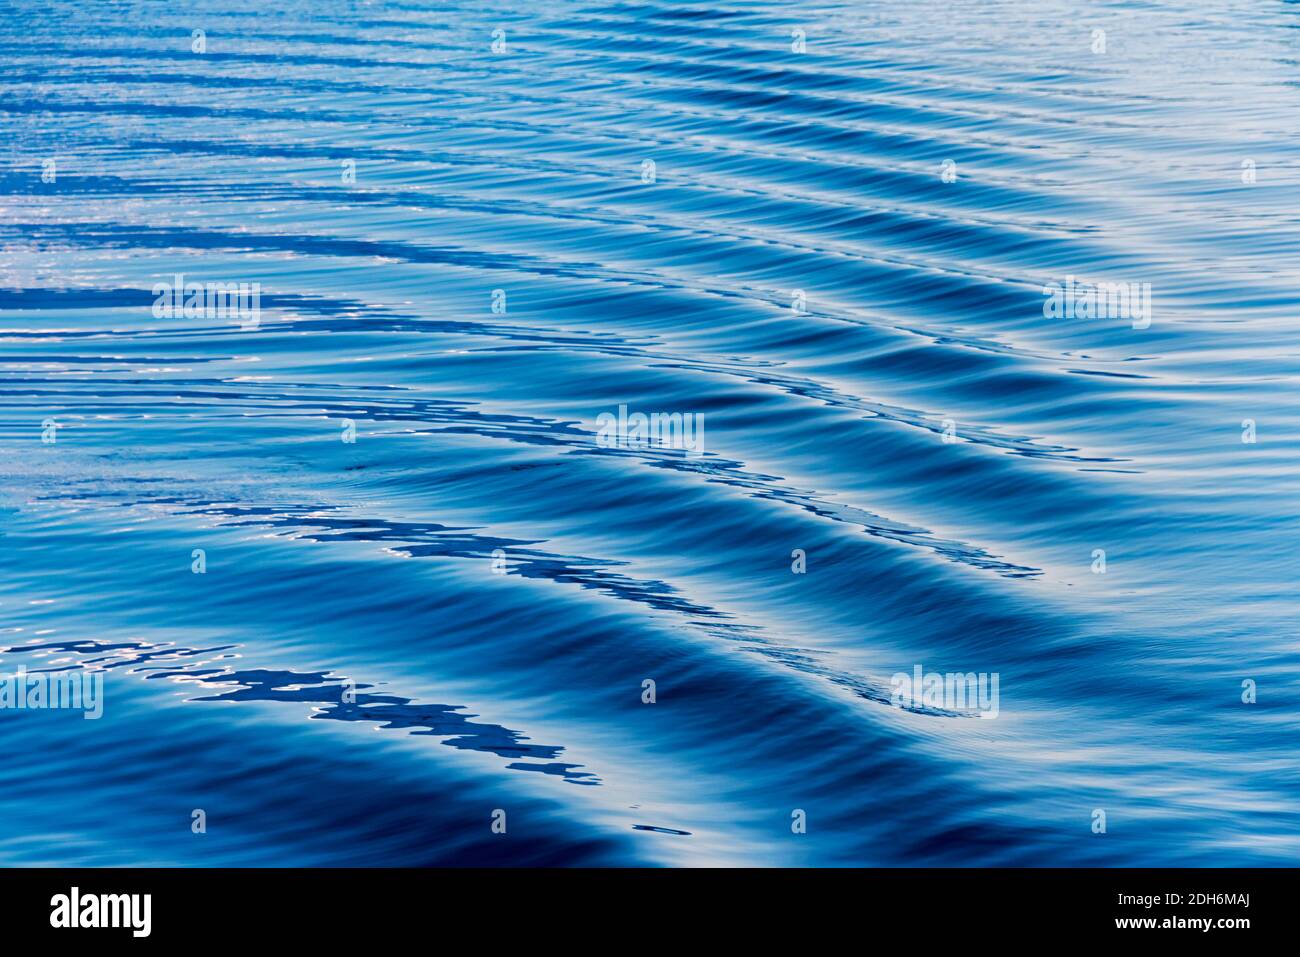 Water ripples in South Atlantic Ocean, Antarctica Stock Photo